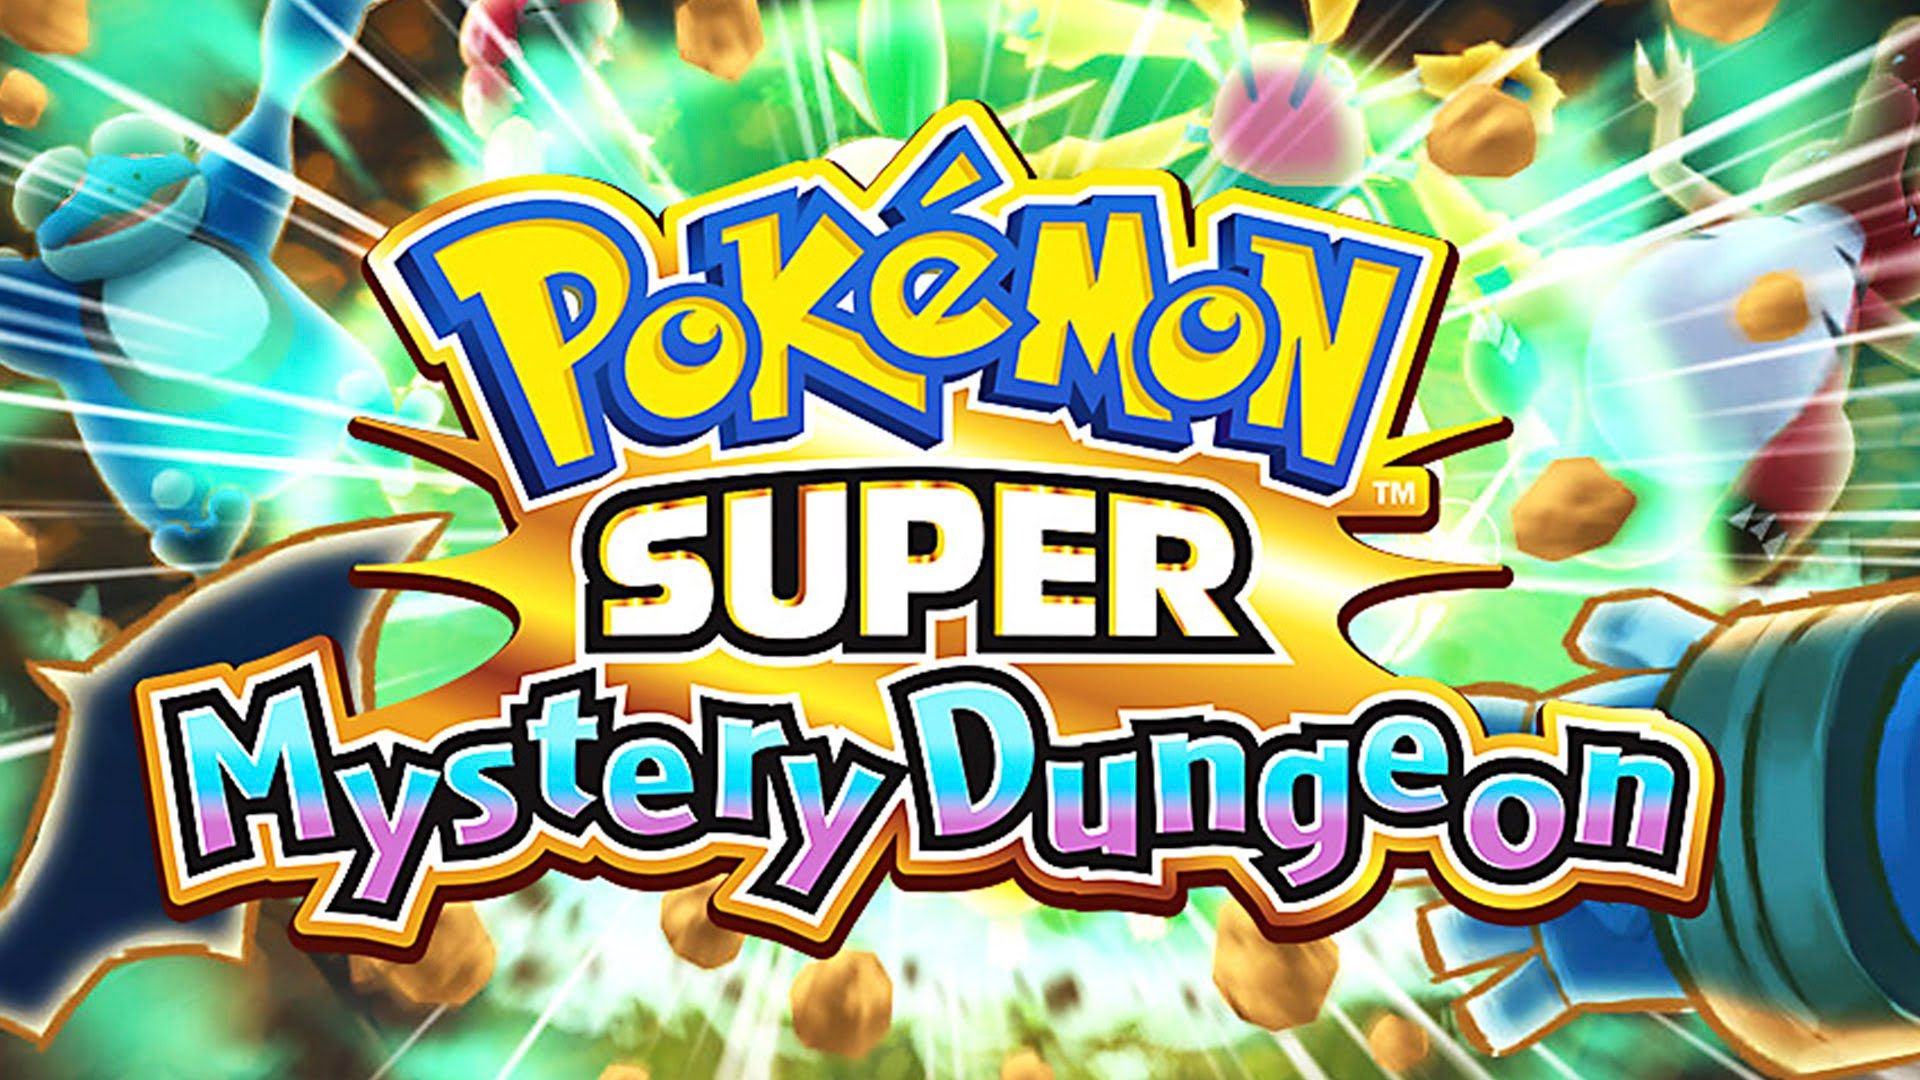 Pokémon Super Mystery Dungeon - First Look! - Nerd Underground